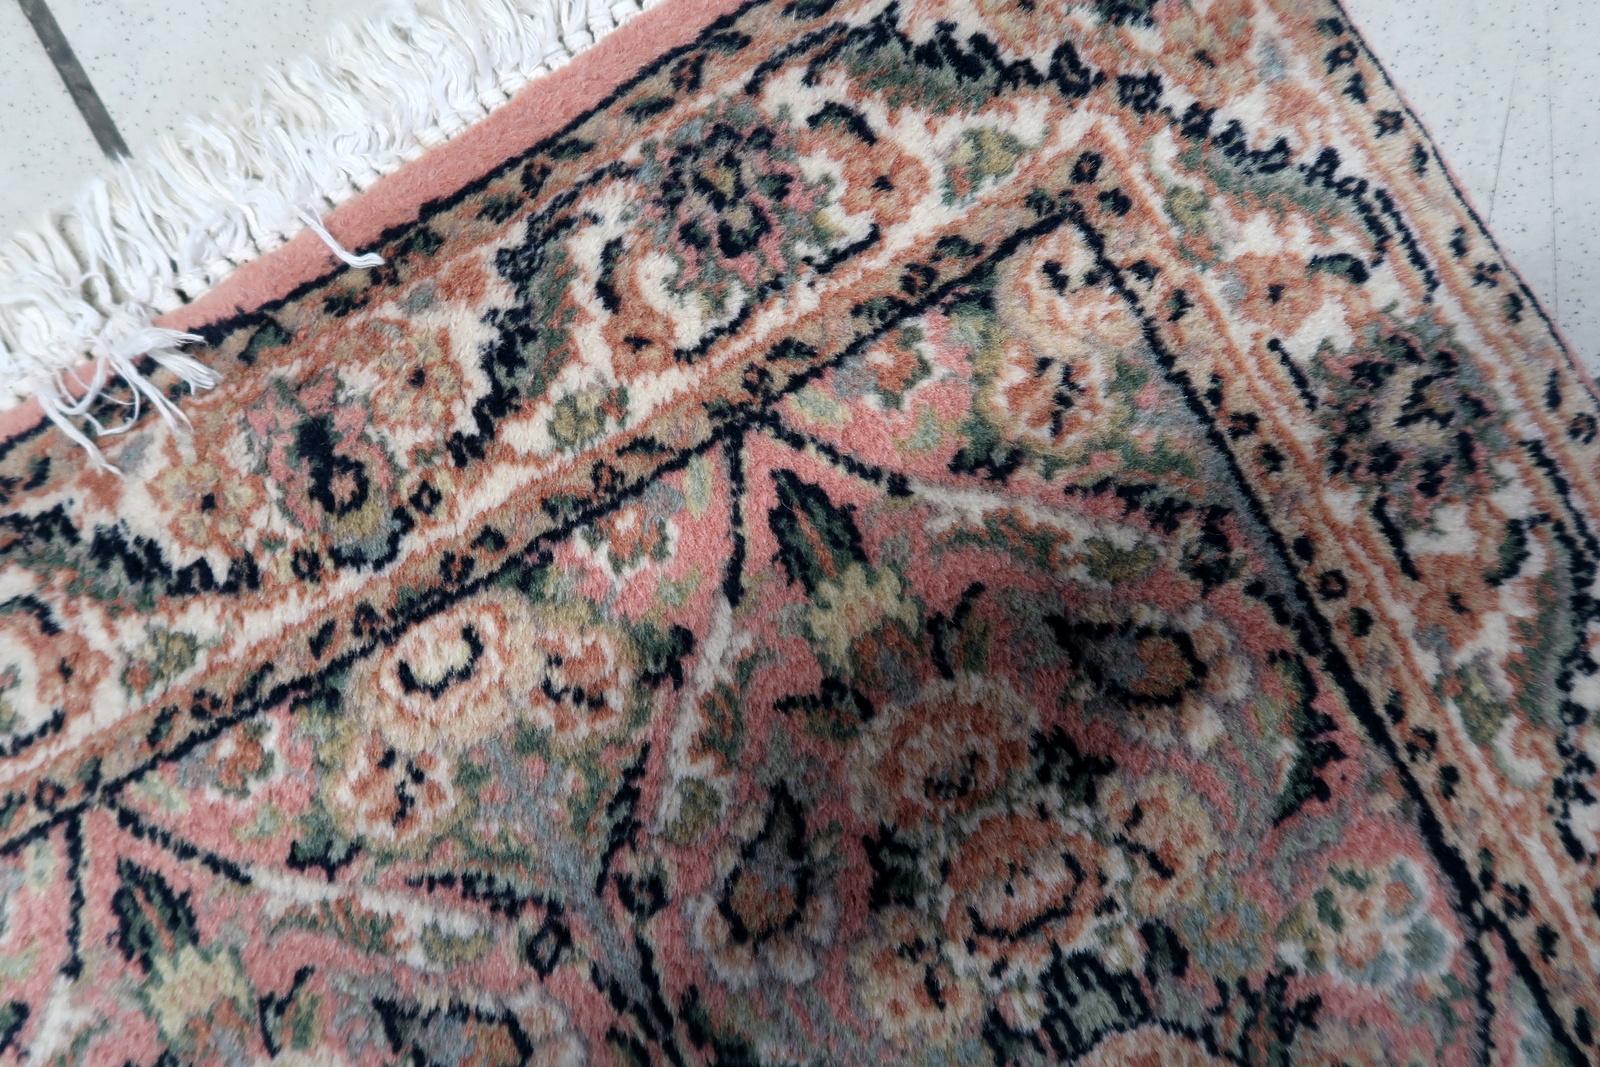 Wir stellen unseren exquisiten handgefertigten persischen Kerman-Teppich im Vintage-Stil aus den 1950er Jahren vor. Dieser charmante Teppich hat eine kompakte Größe von 61 cm x 97 cm und ist damit ein perfekter Akzent für jeden Raum.

Der Teppich